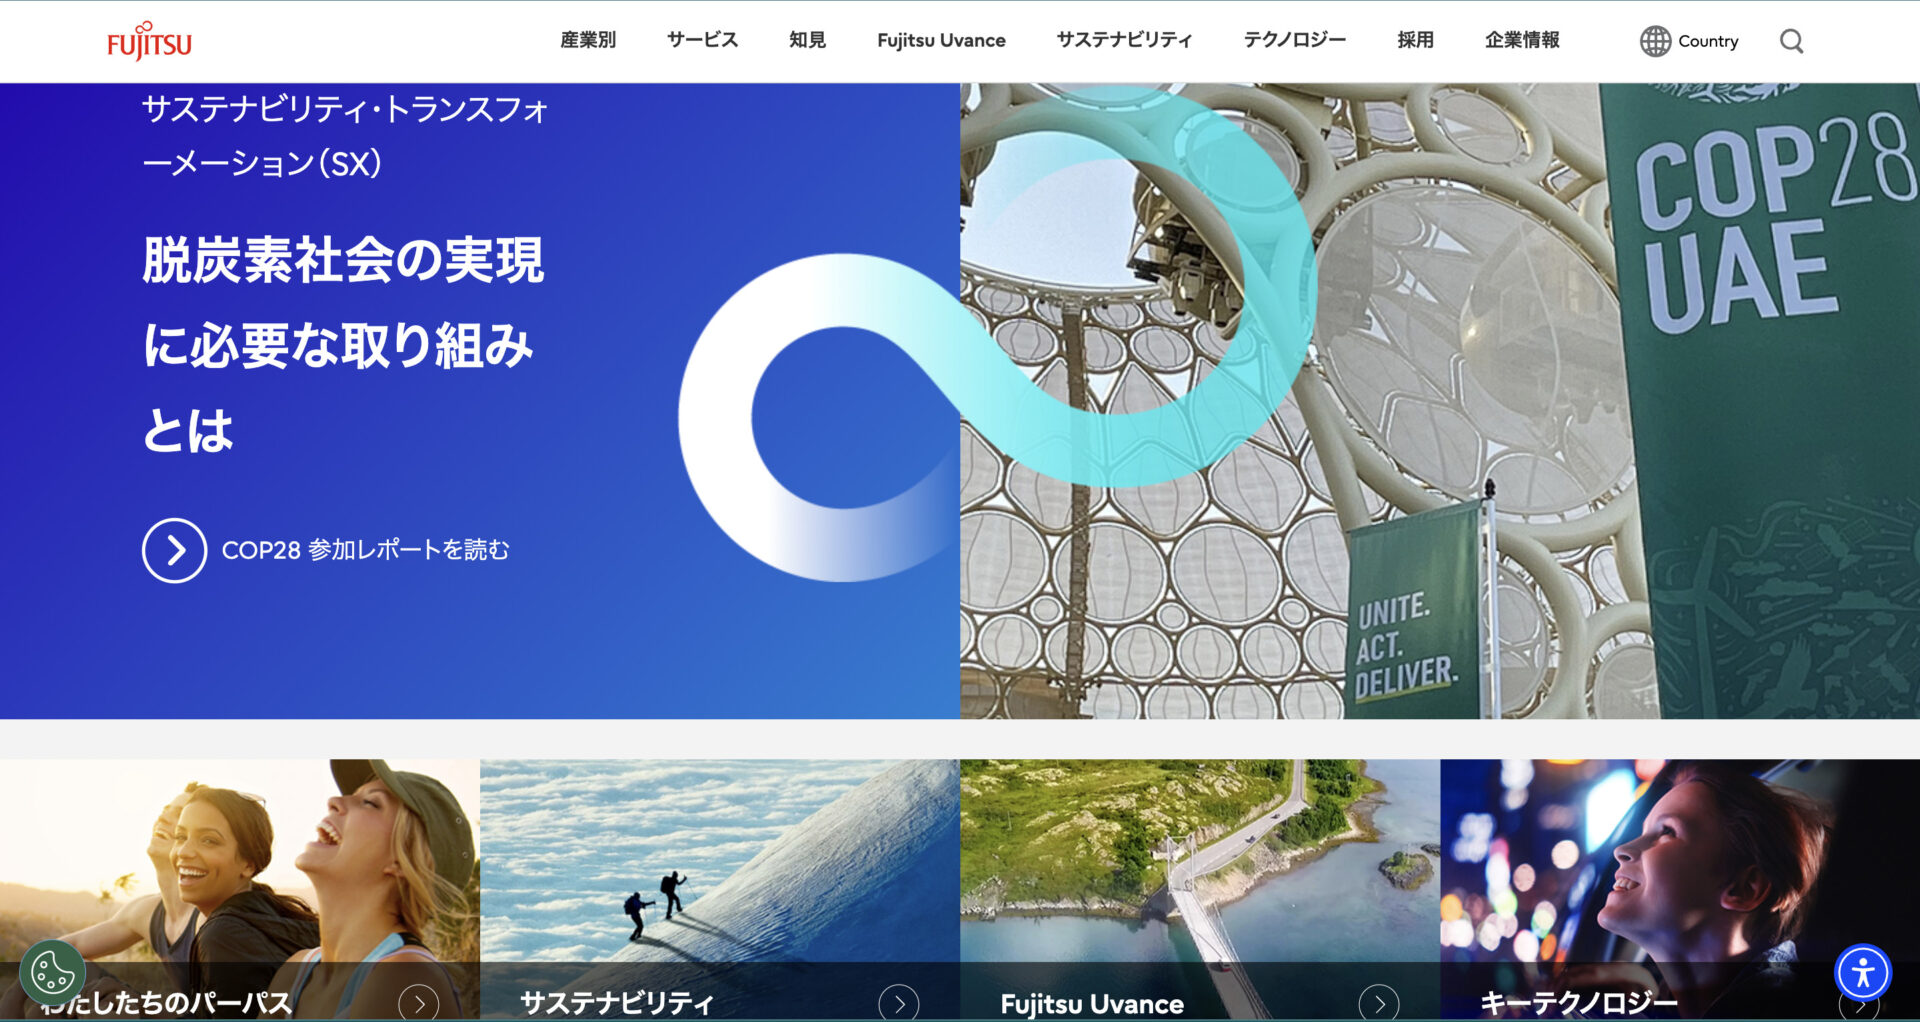 “富士通株式会社のホームページ”